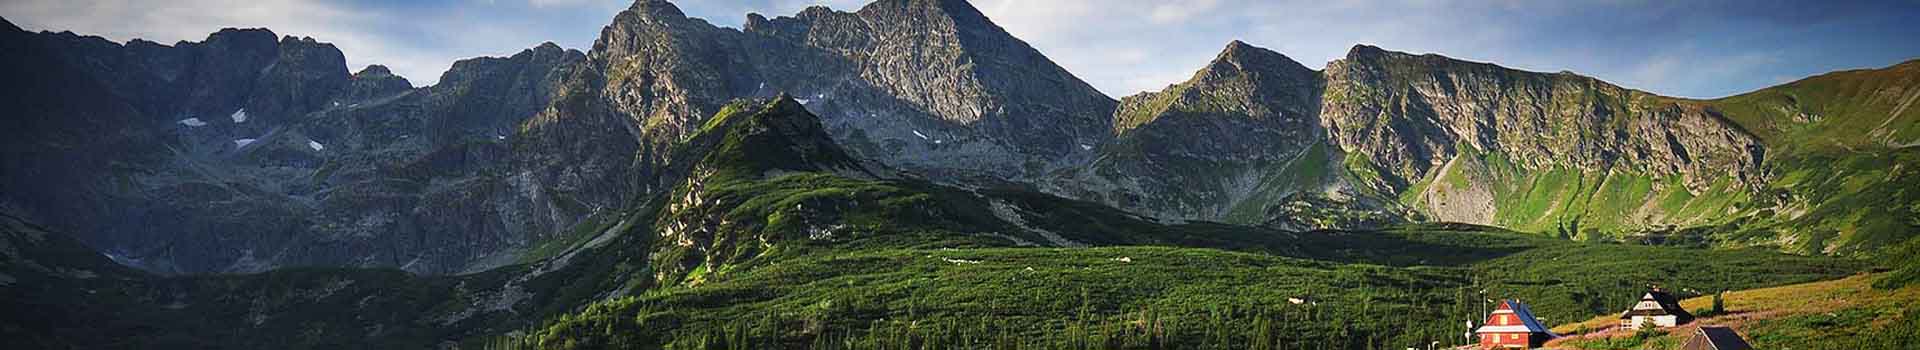 Tło Tatra Mountains and Podhale